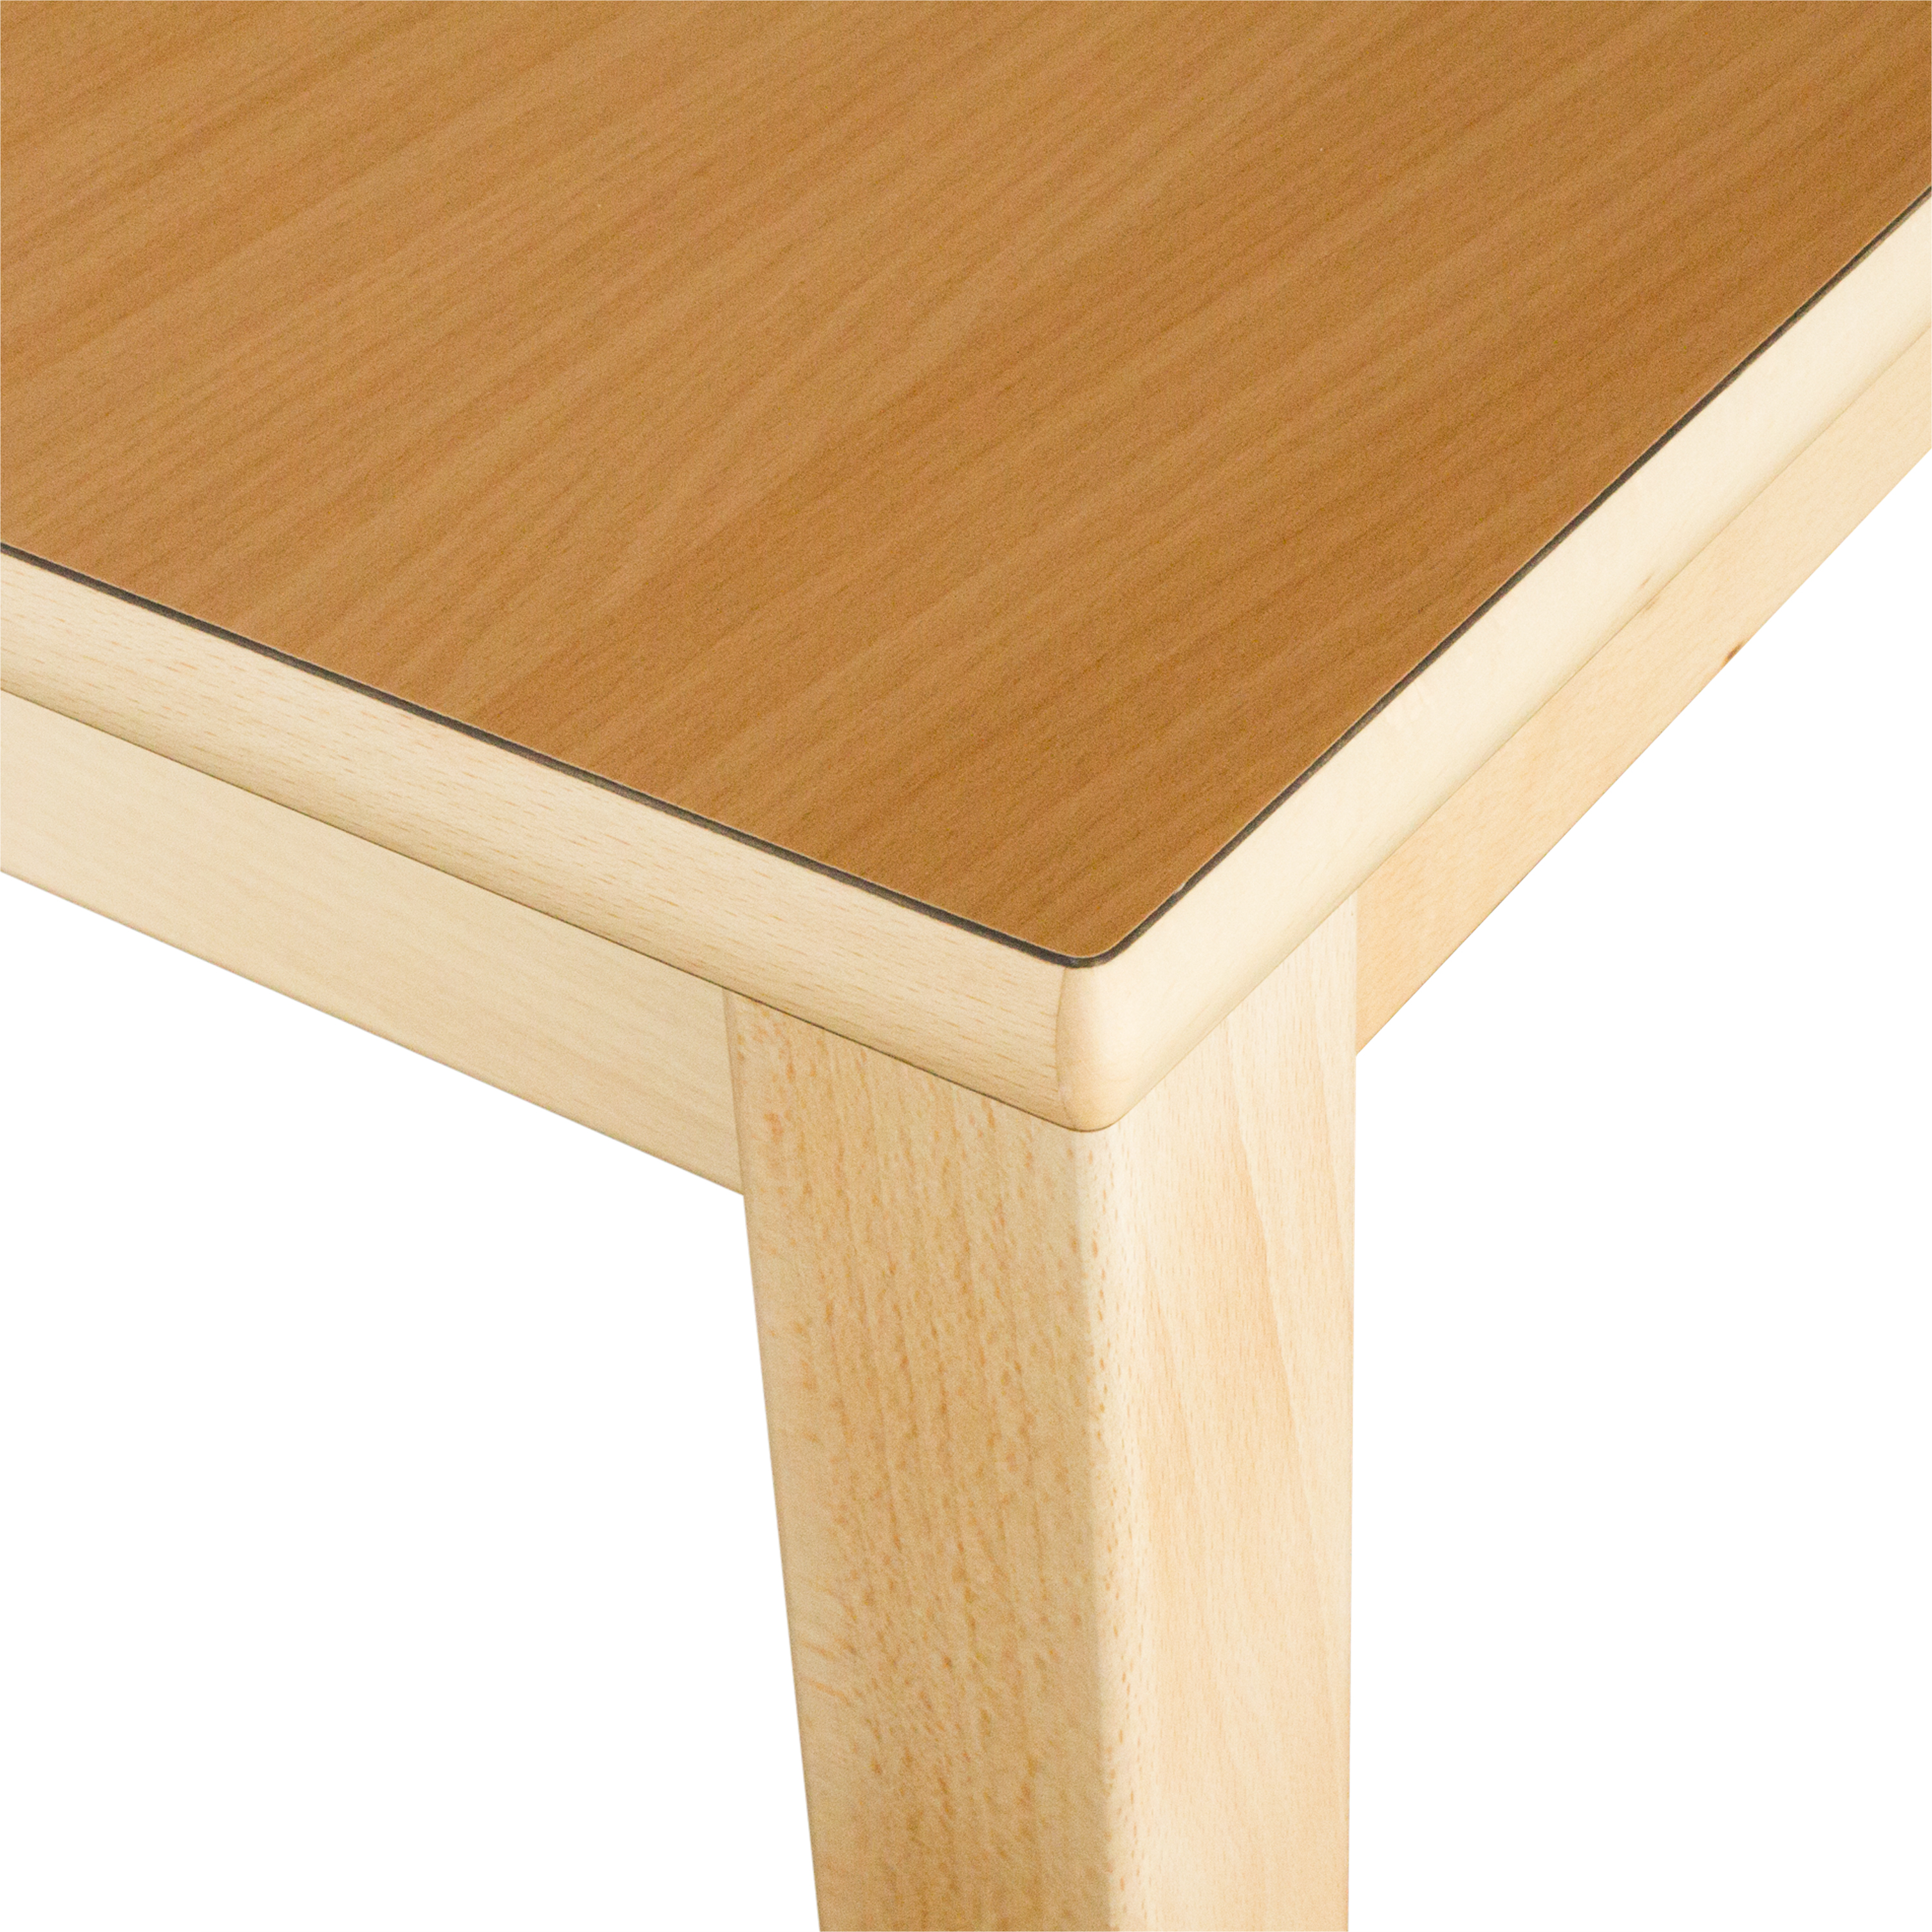 Runder Tisch, Durchmesser 120 cm, Tischhöhe 40 cm